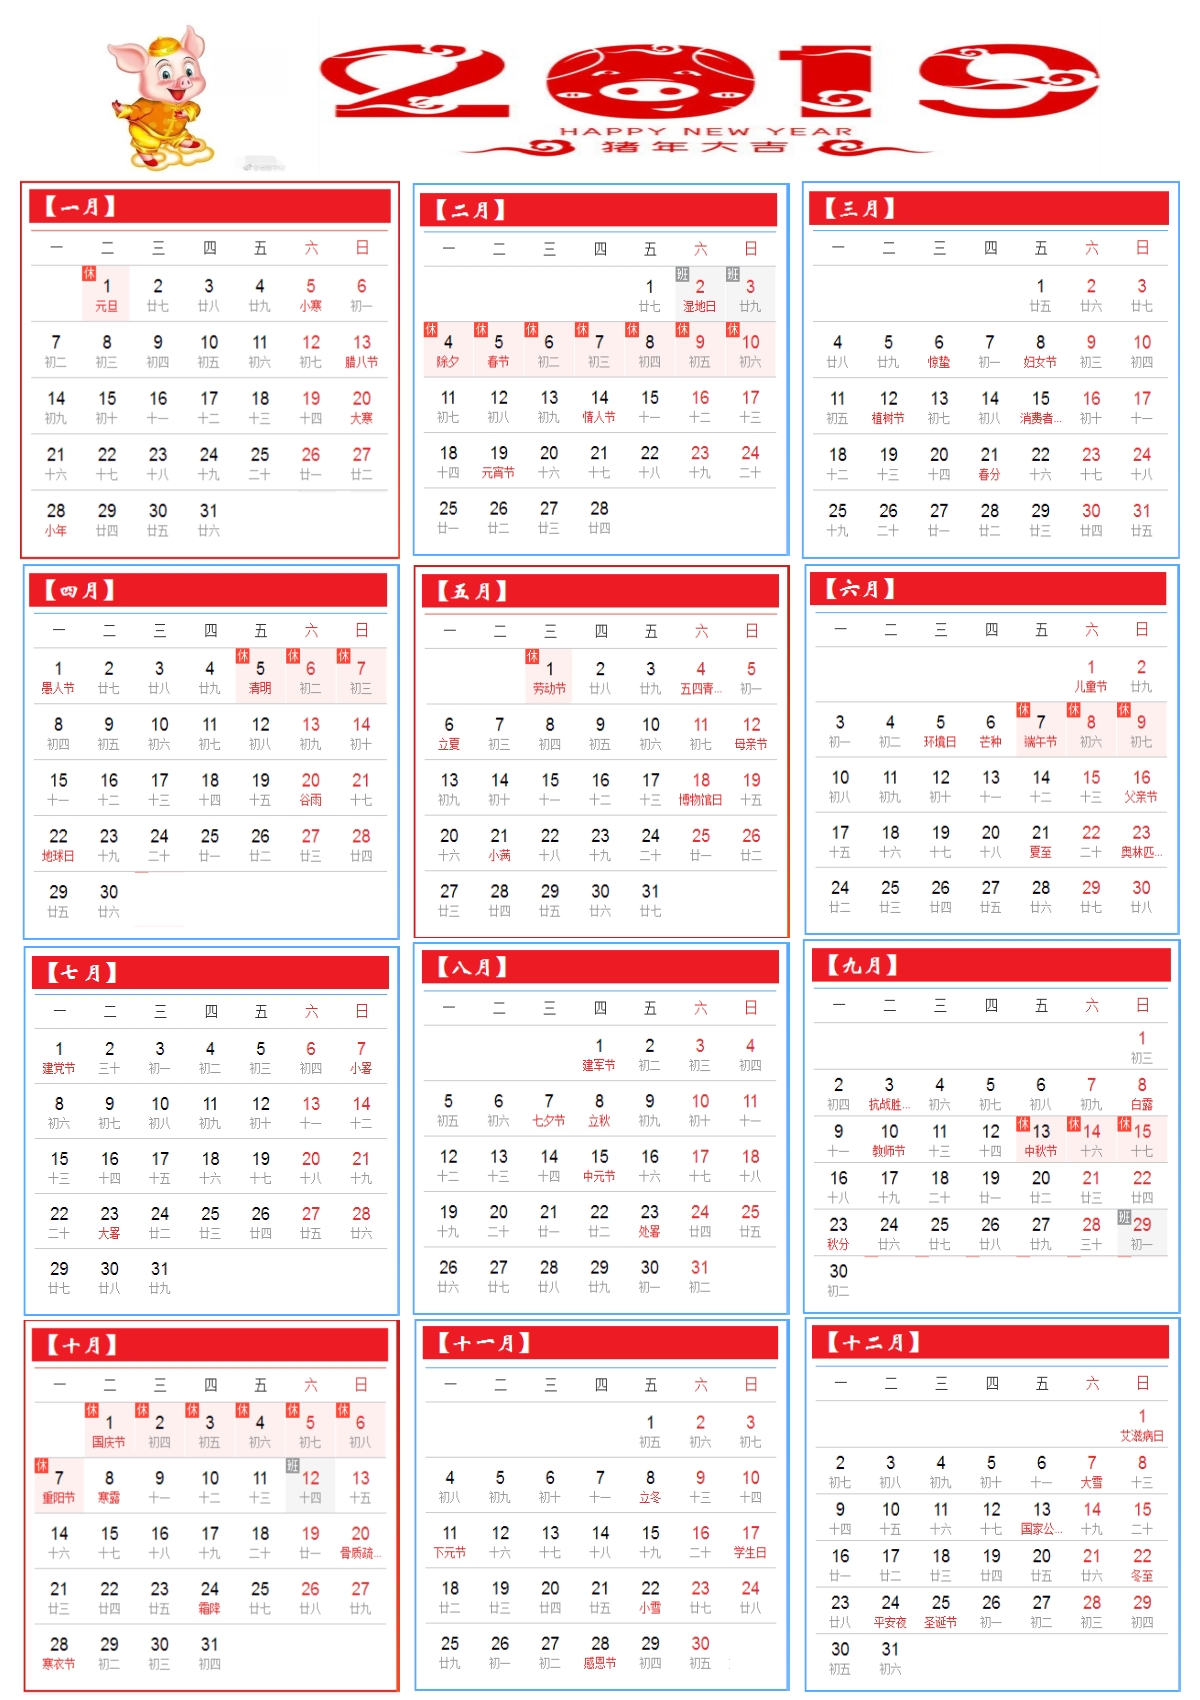 2019年日历表全年一页图片